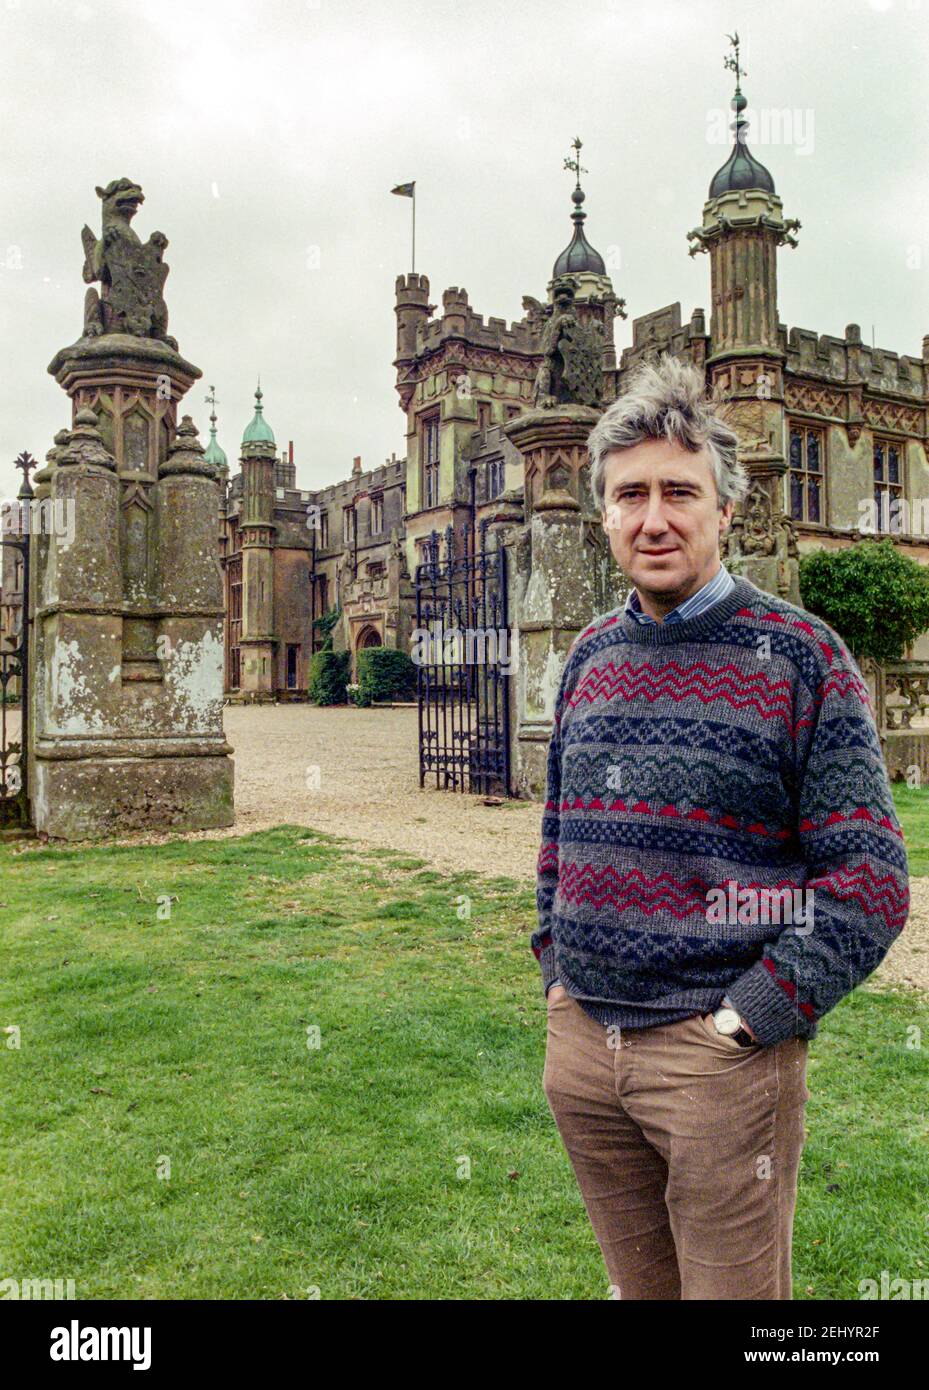 STEVENAGE - ANGLETERRE 90: David Lytton-Cobbold, 2e baron Cobbold posant à l'extérieur de la maison familiale “Knebworth House, Hertfordshire, Angleterre sur le 1990. Banque D'Images